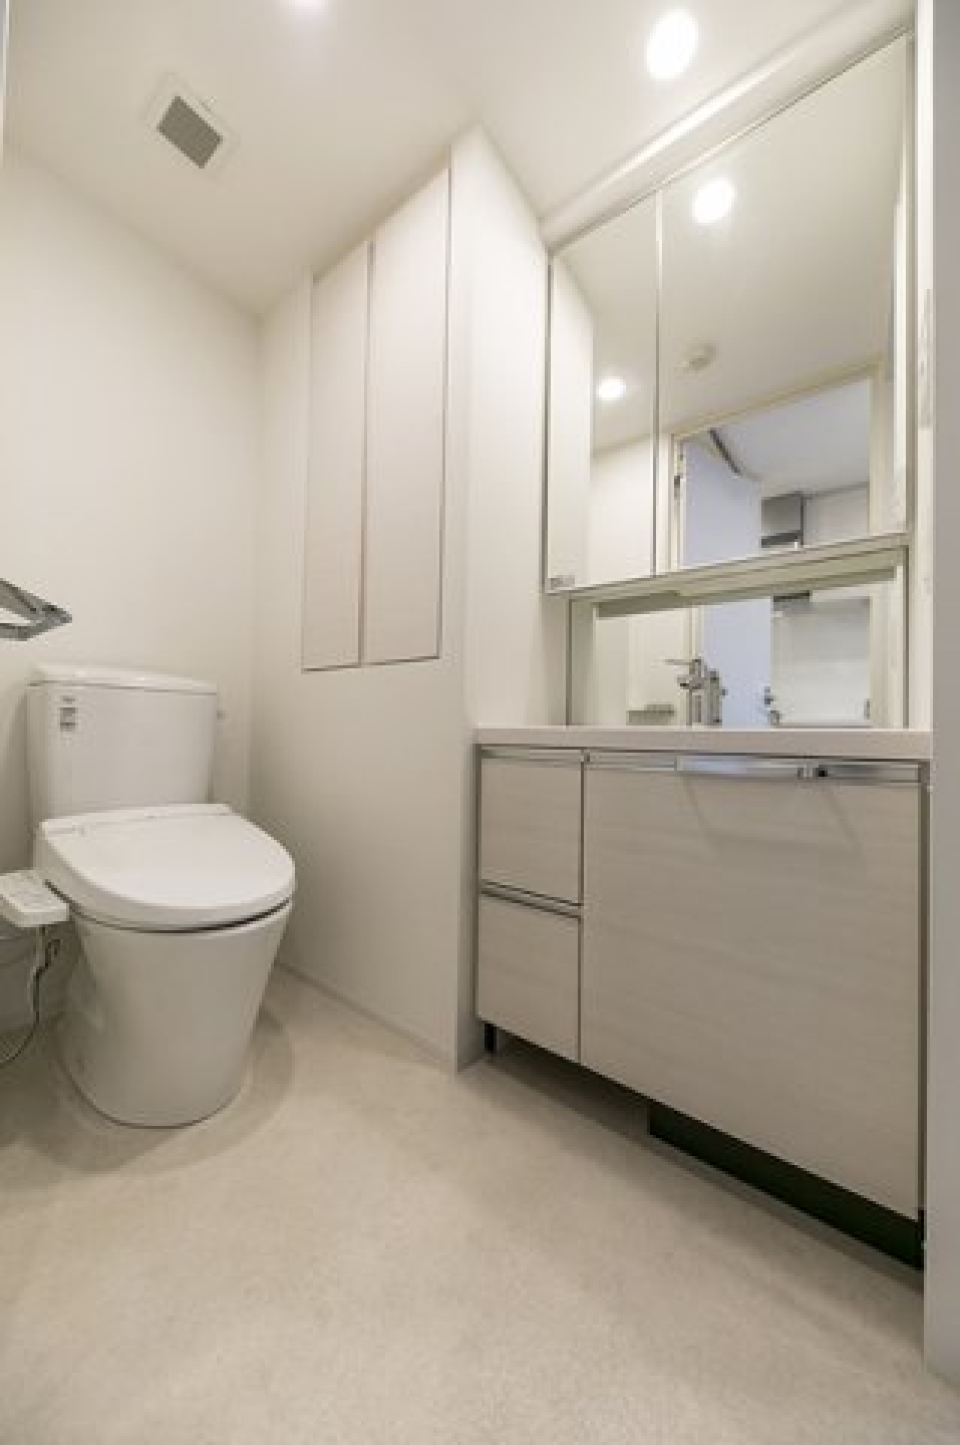 トイレと洗面台が一緒になっている設計です。清潔感のある空間が嬉しいですね。
※写真は同タイプ住戸です。